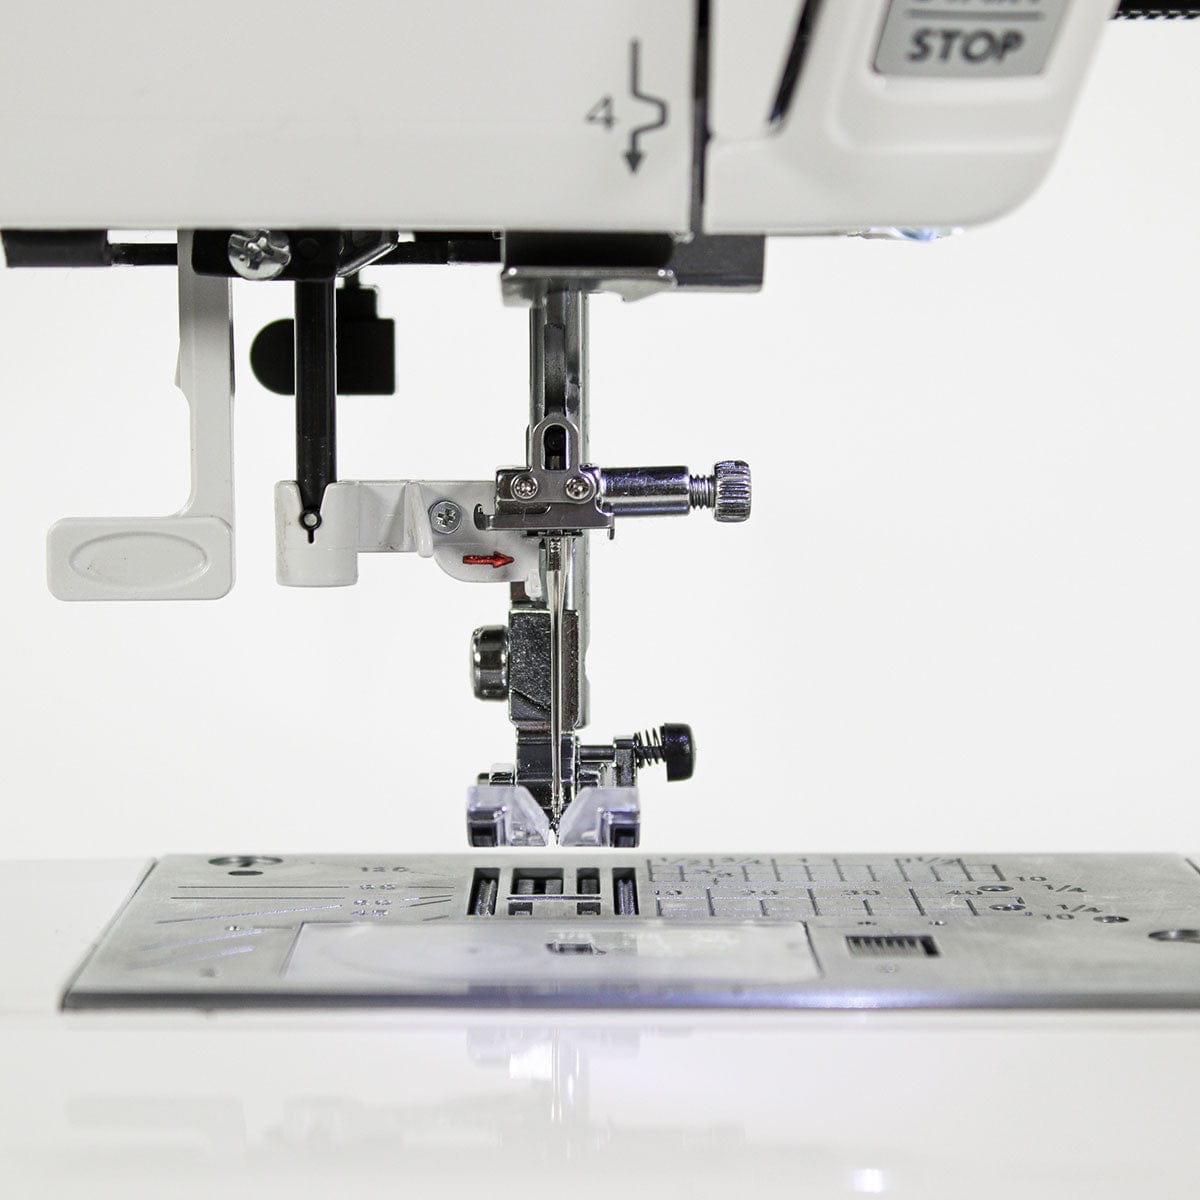 Janome 230DC Sewing Machine